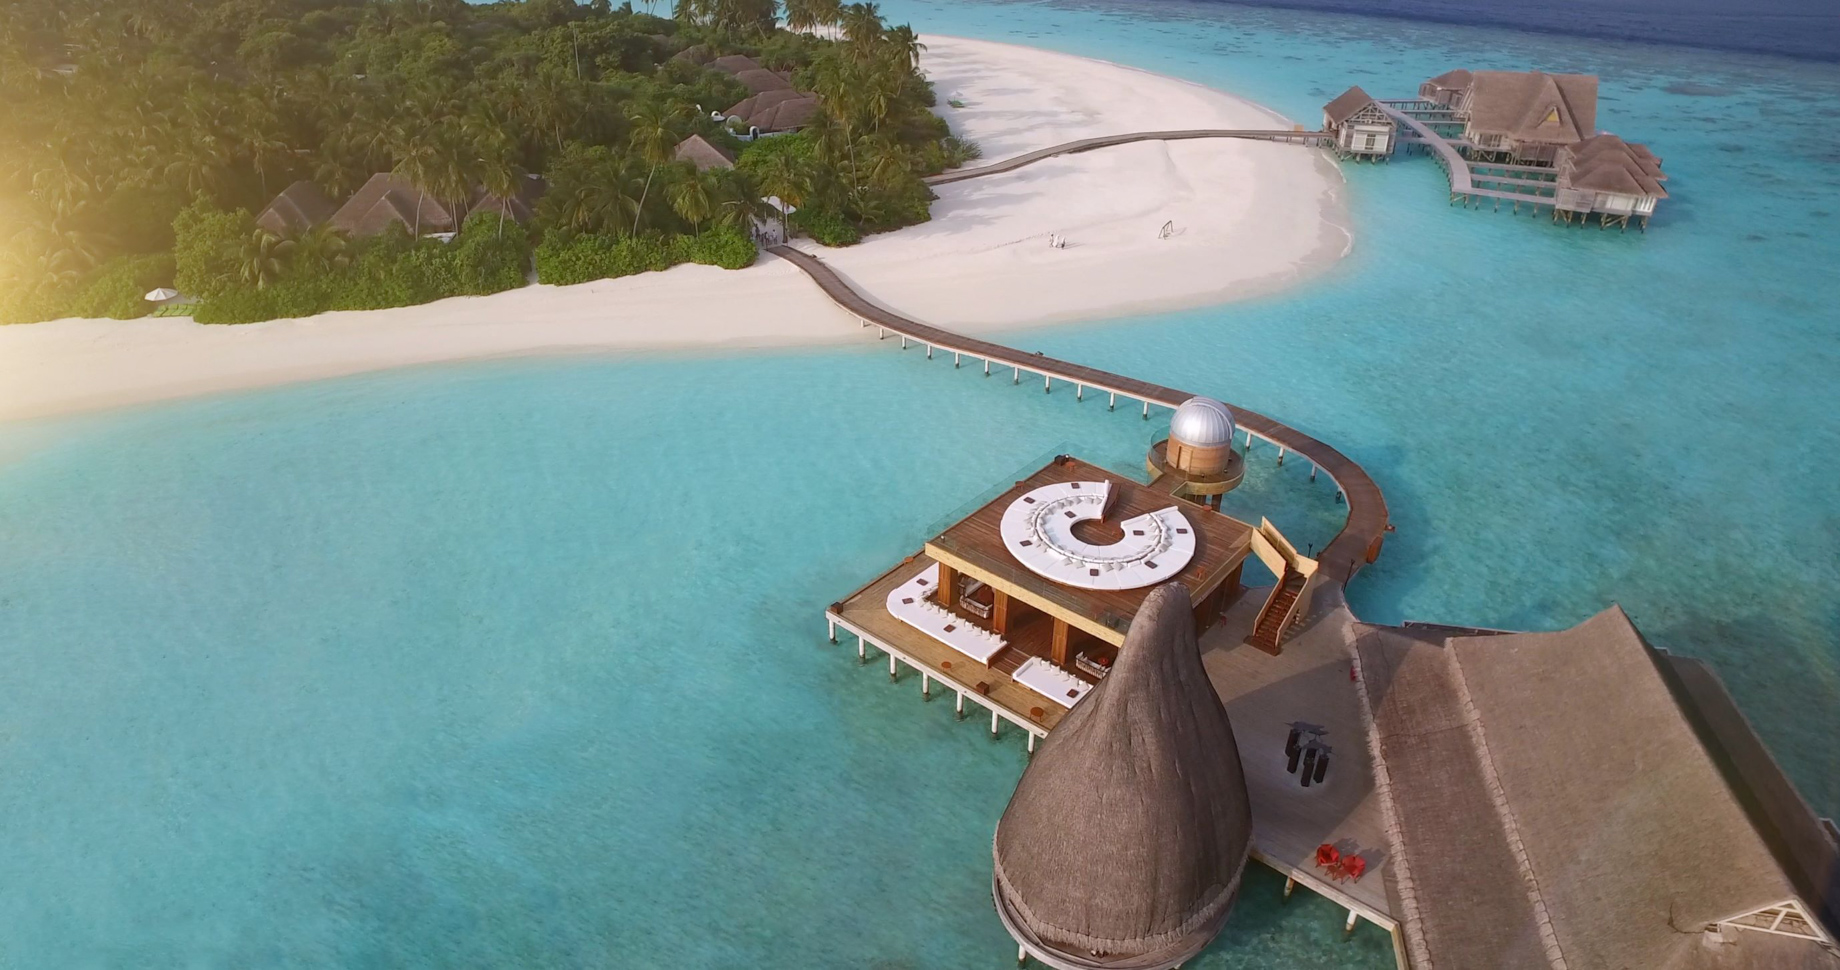 Anantara Kihavah Maldives Villas Resort – Baa Atoll, Maldives – SKY Over Water Observatory and Bar Aerial View